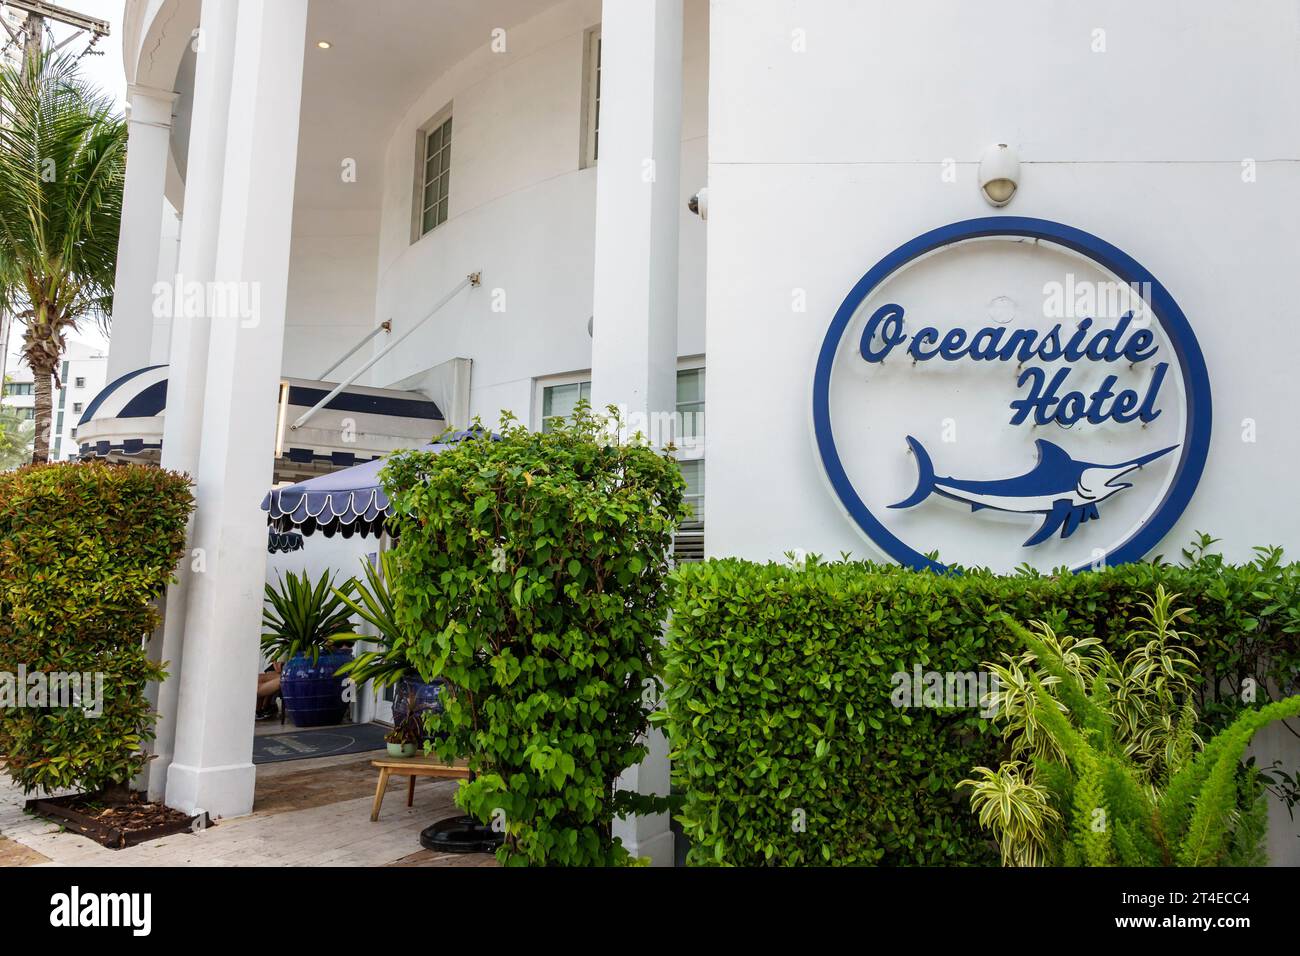 Miami Beach Florida, Außenfassade, Gebäude Vordereingang Hotel, Collins Avenue, Oceanside Hotel Schild, Hotels Motels Unternehmen Stockfoto